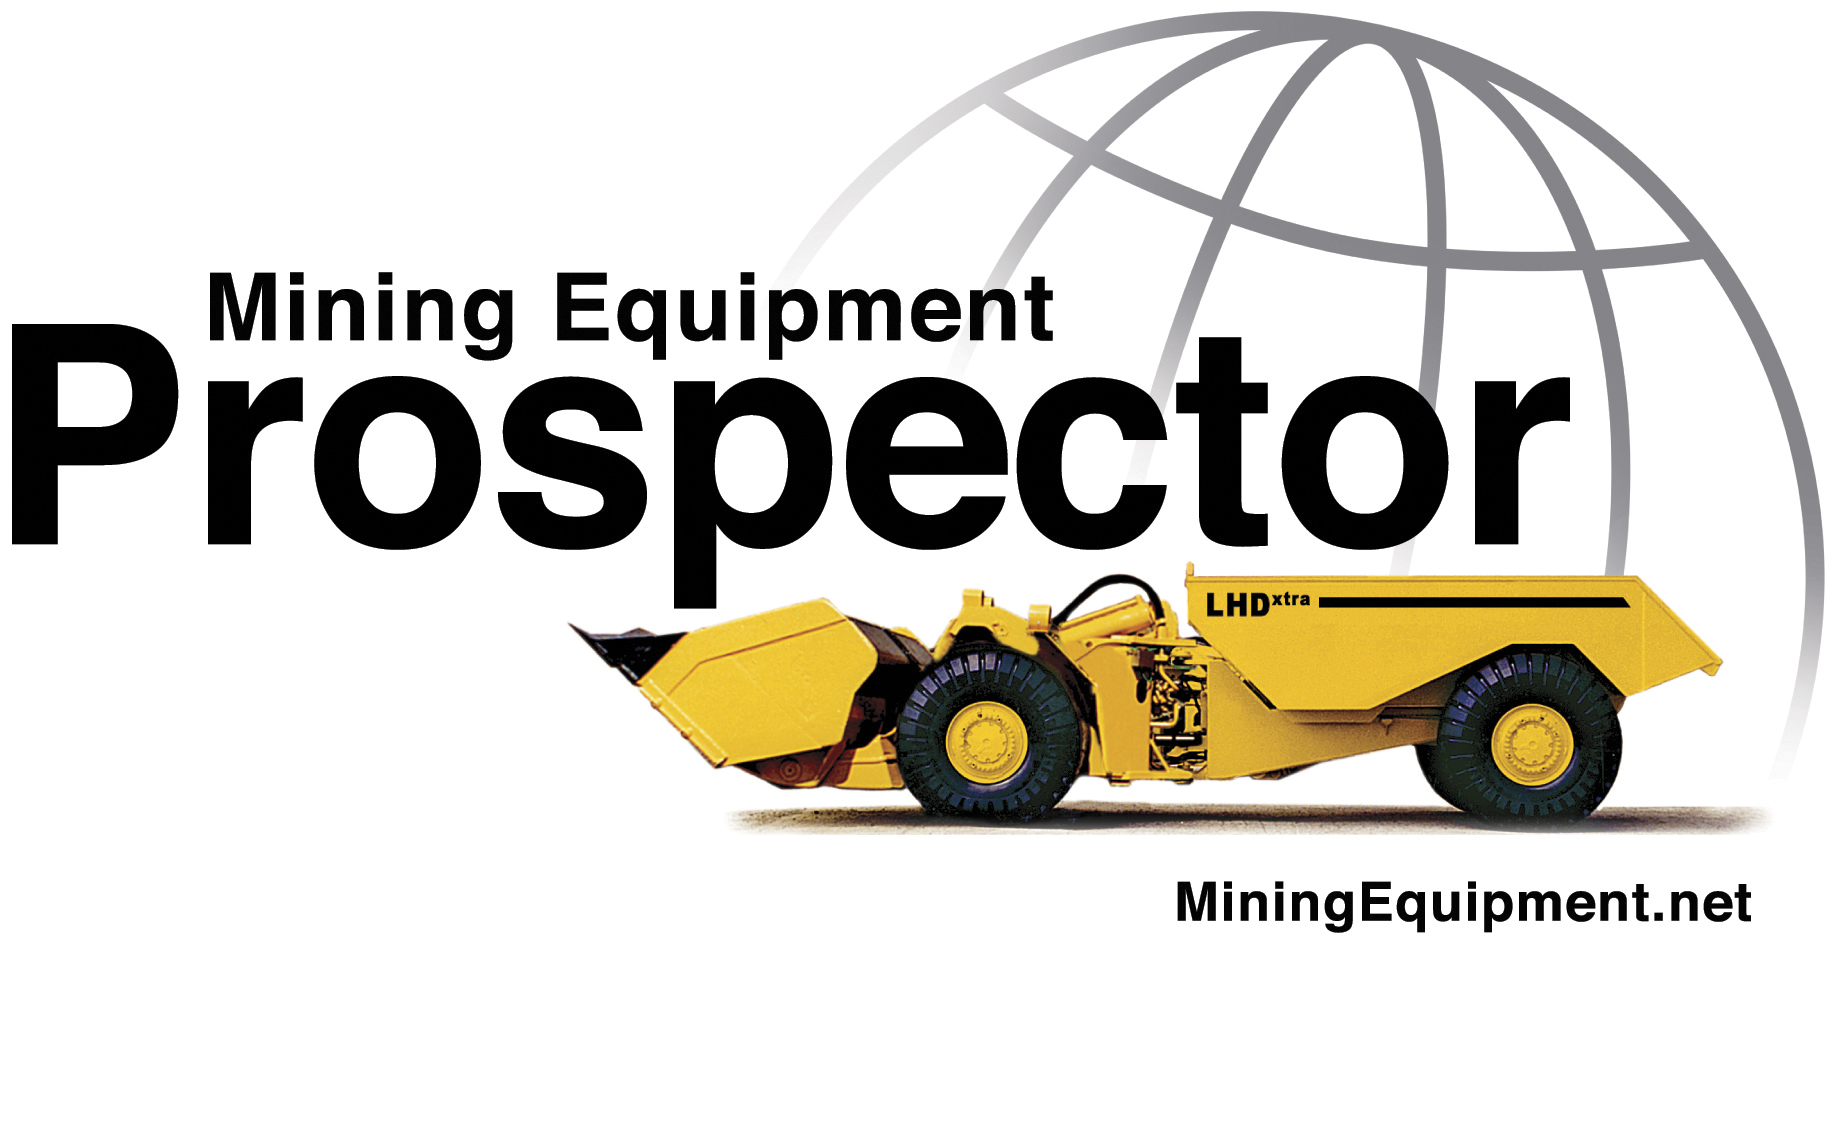 Mining Equipment Prospector